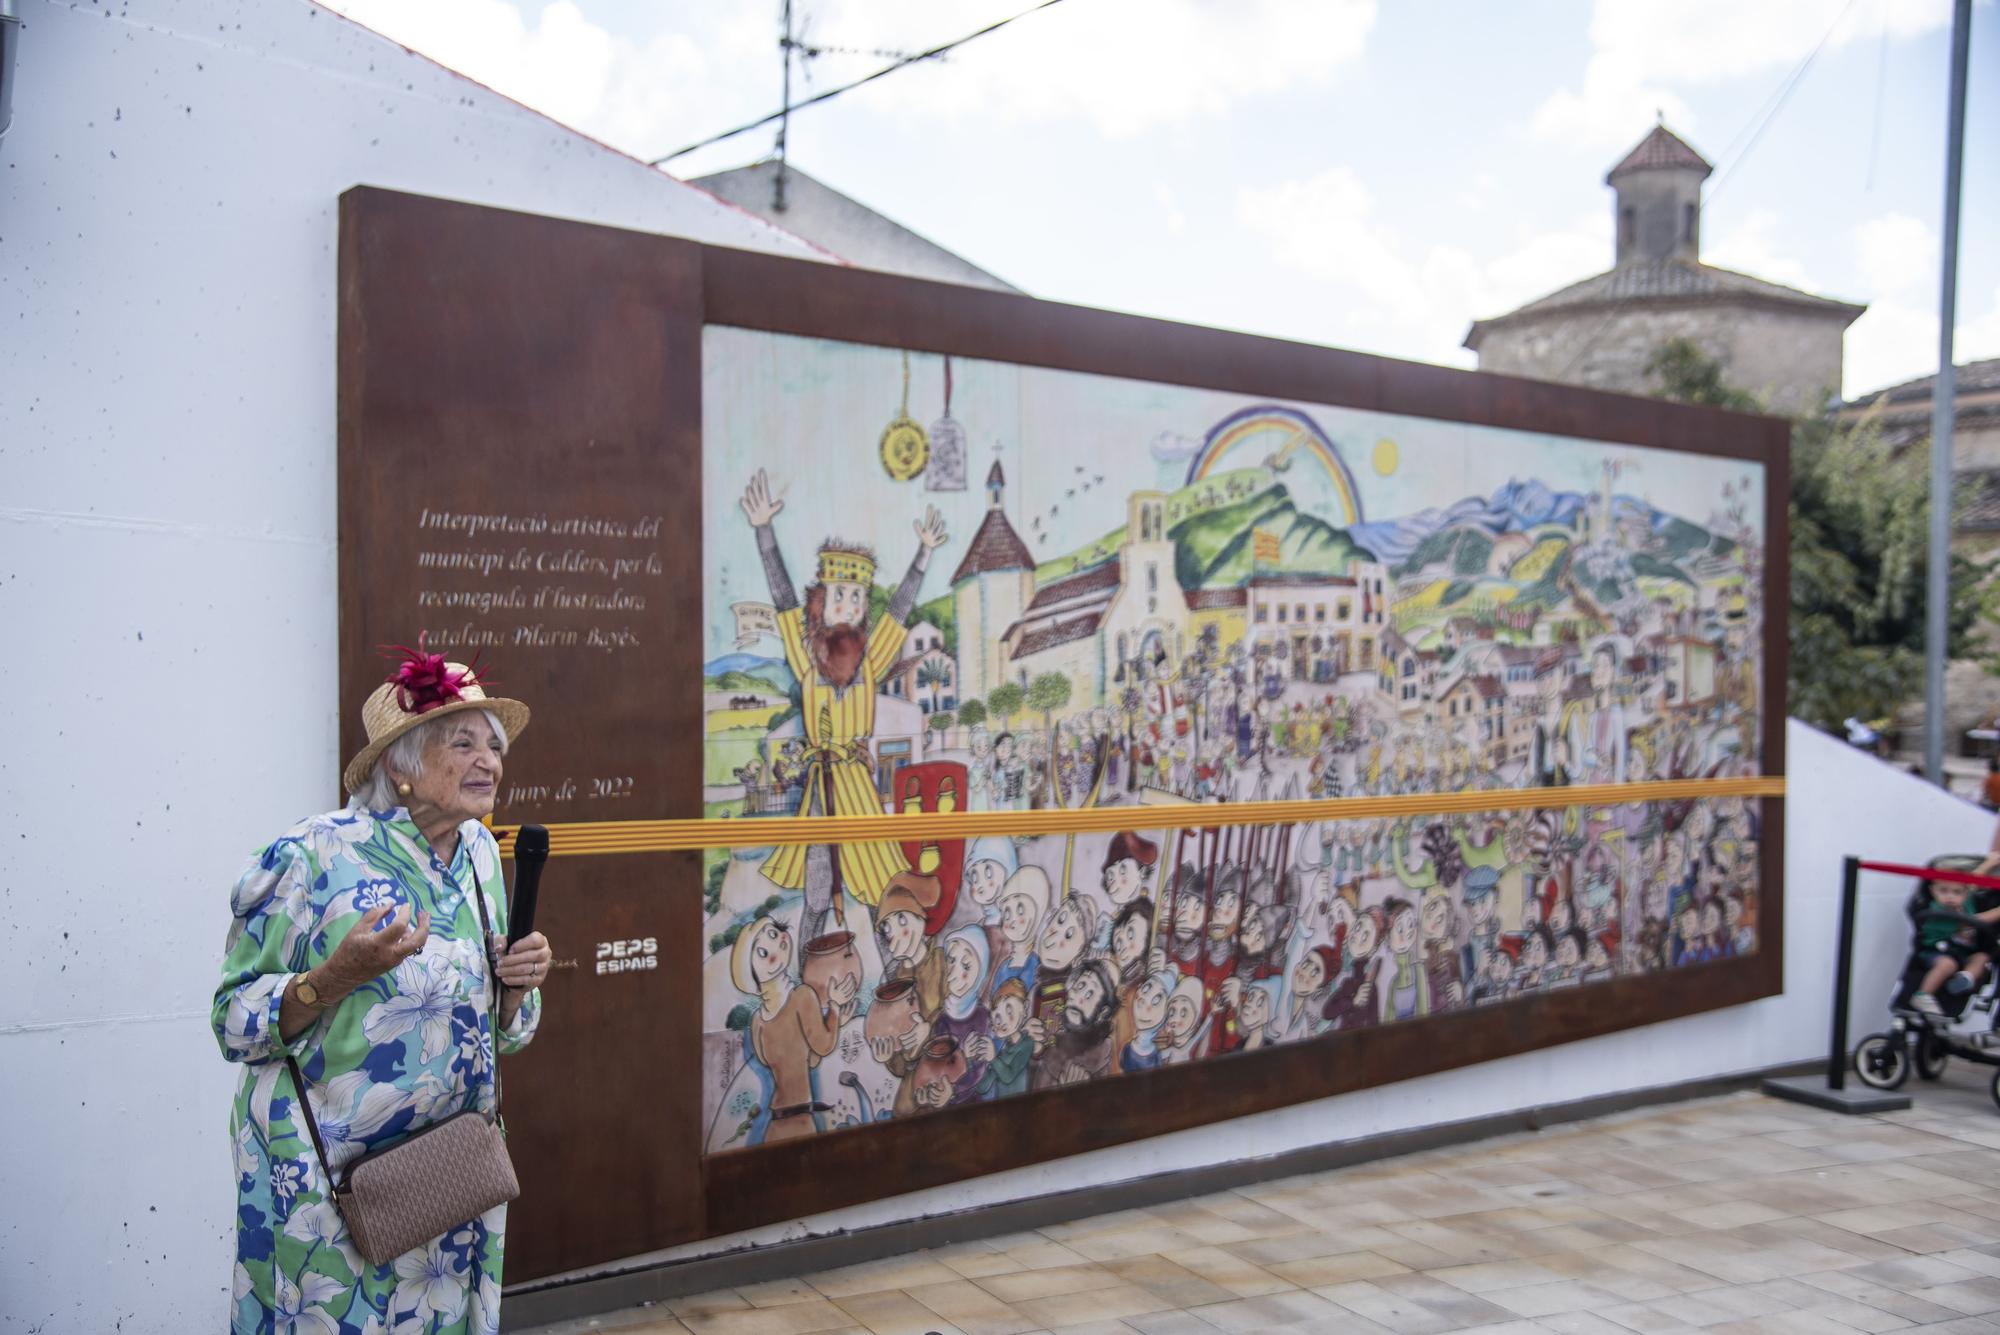 Pilarín Bayés inaugura un mural a Calders